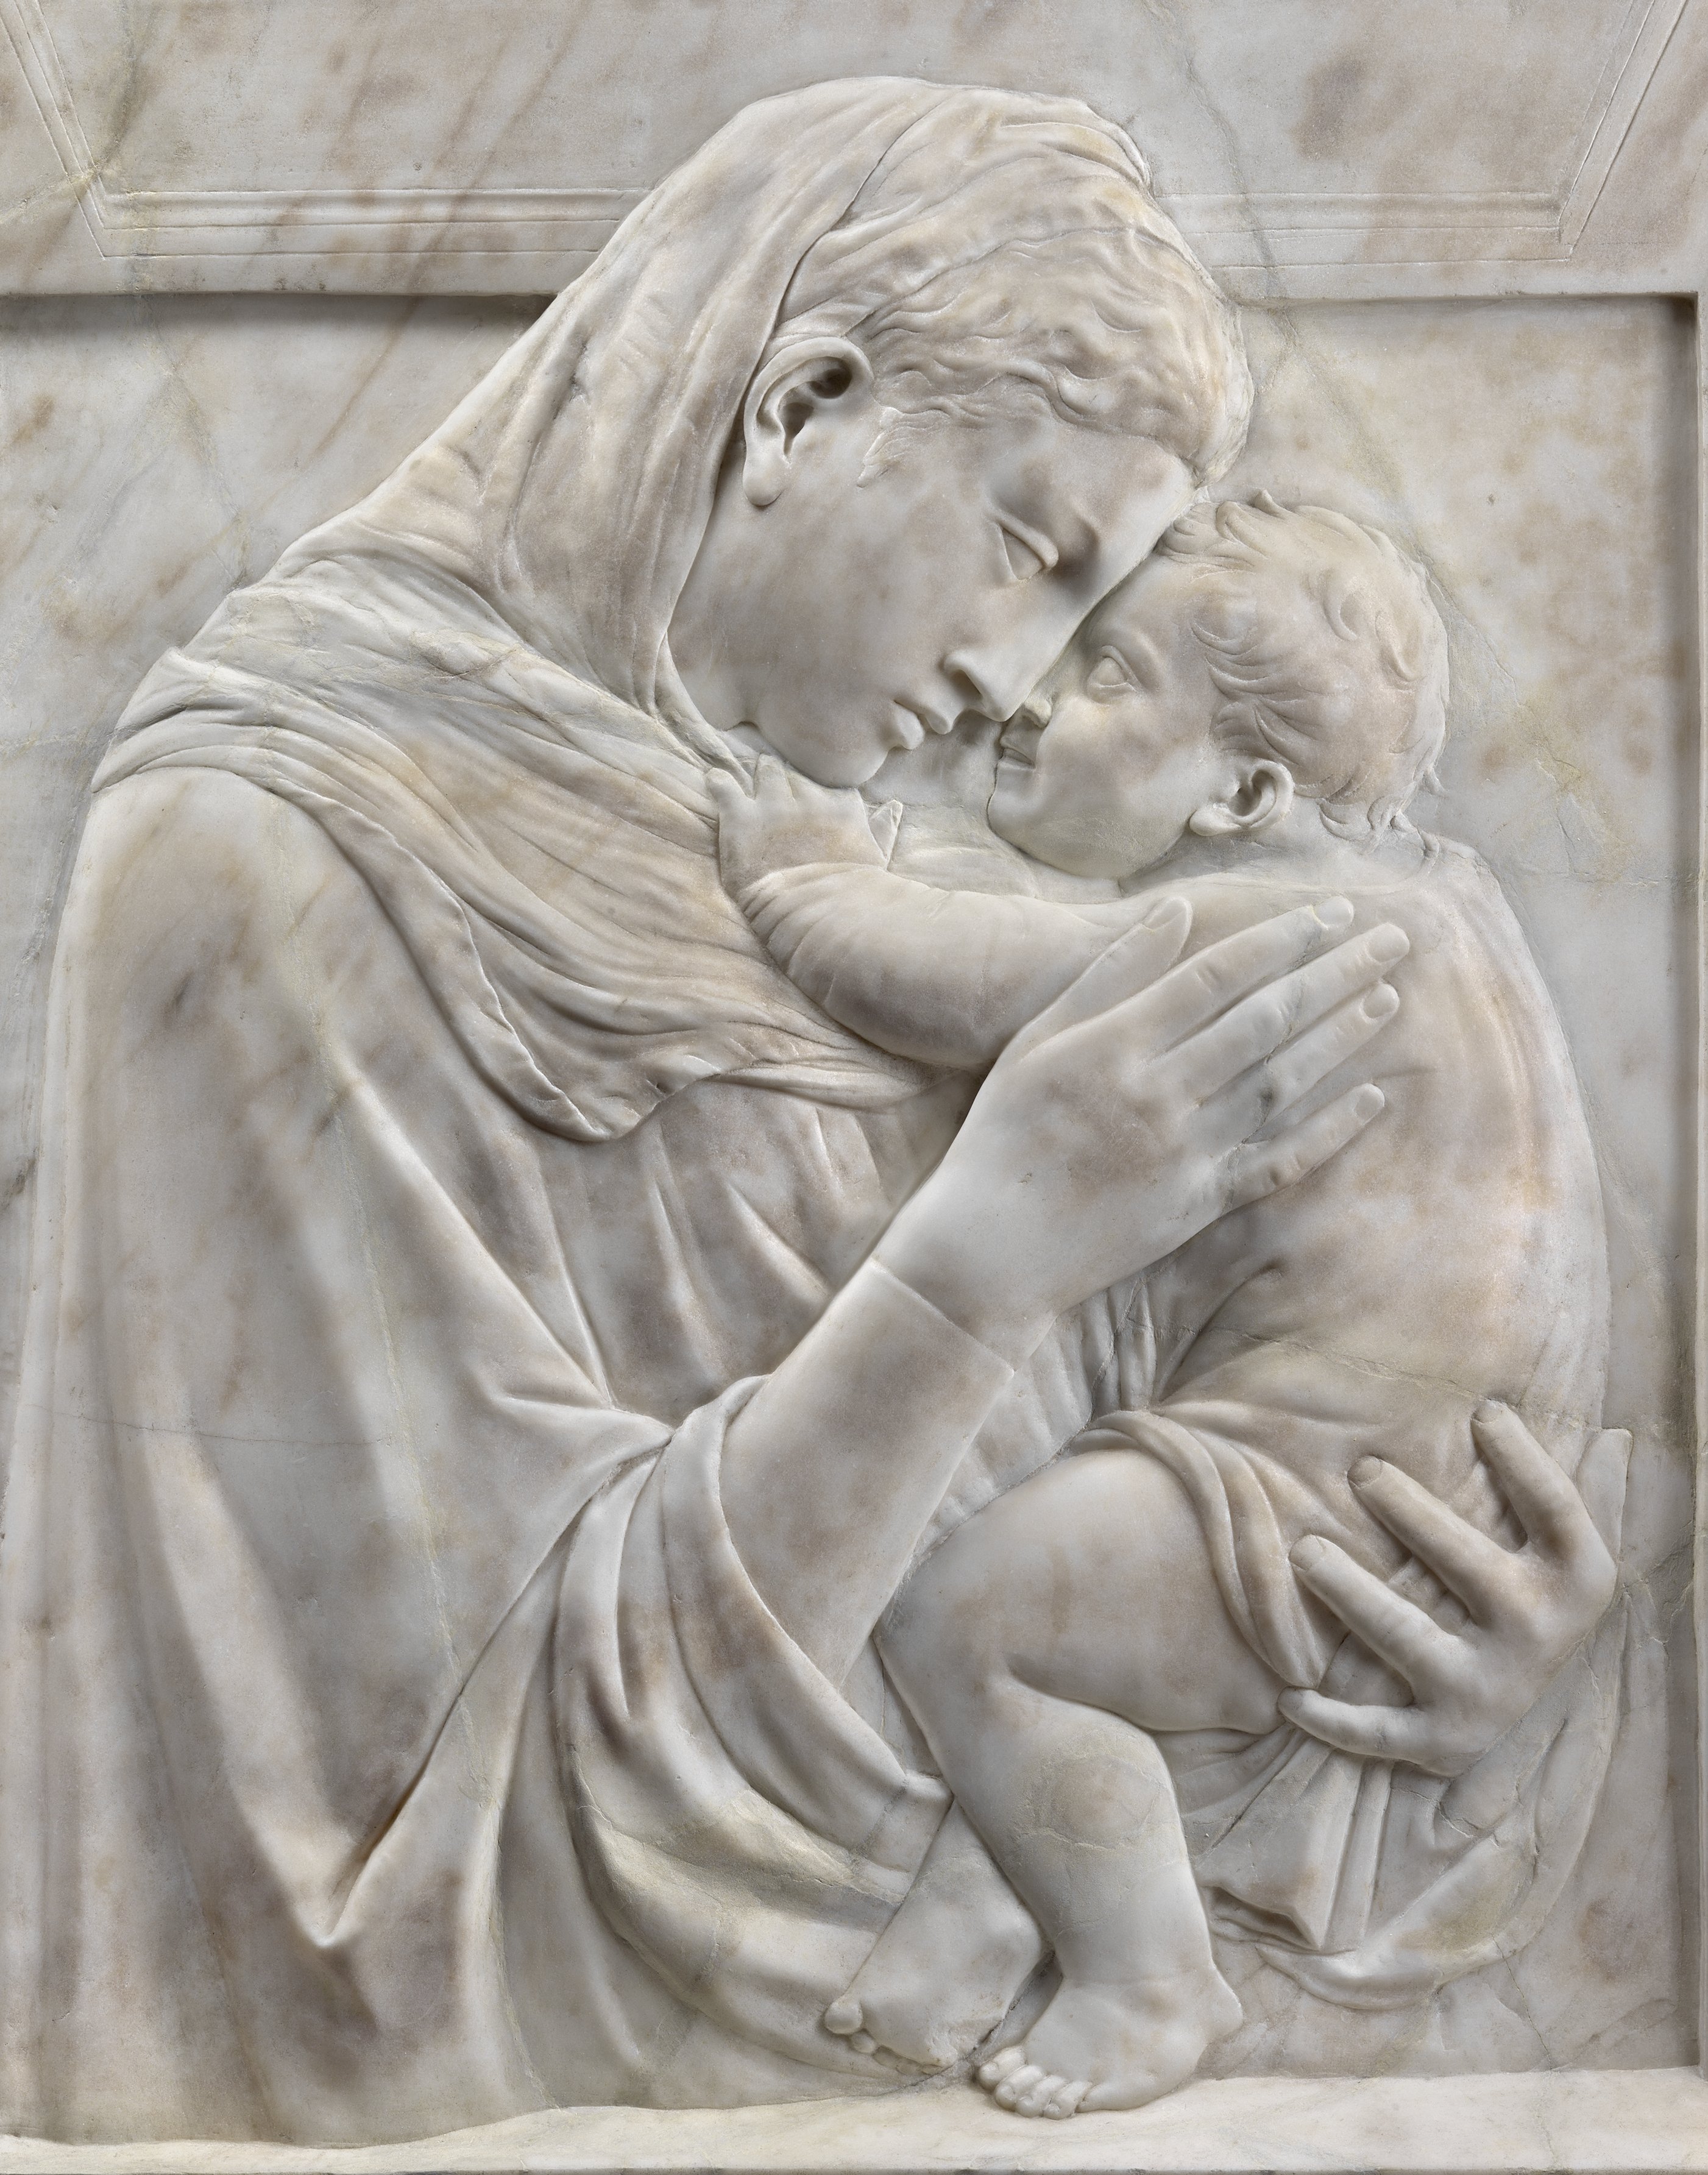 Donatello: Sculpting the Renaissance by Motture, Peta